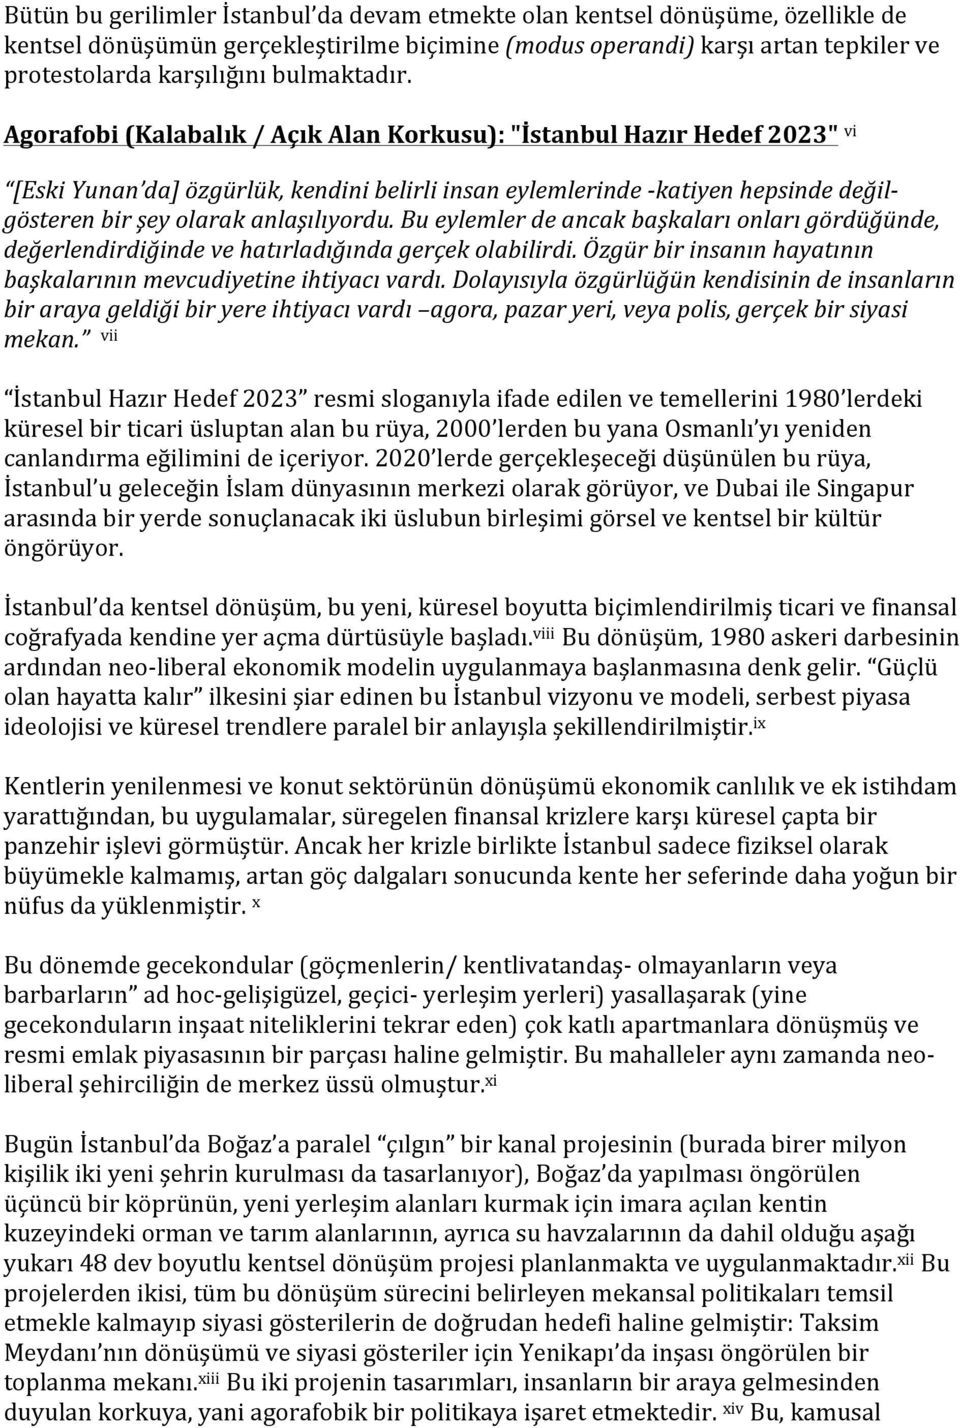 Agorafobi (Kalabalık / Açık Alan Korkusu): "İstanbul Hazır Hedef 2023" vi [Eski Yunan da] özgürlük, kendini belirli insan eylemlerinde - katiyen hepsinde değil- gösteren bir şey olarak anlaşılıyordu.